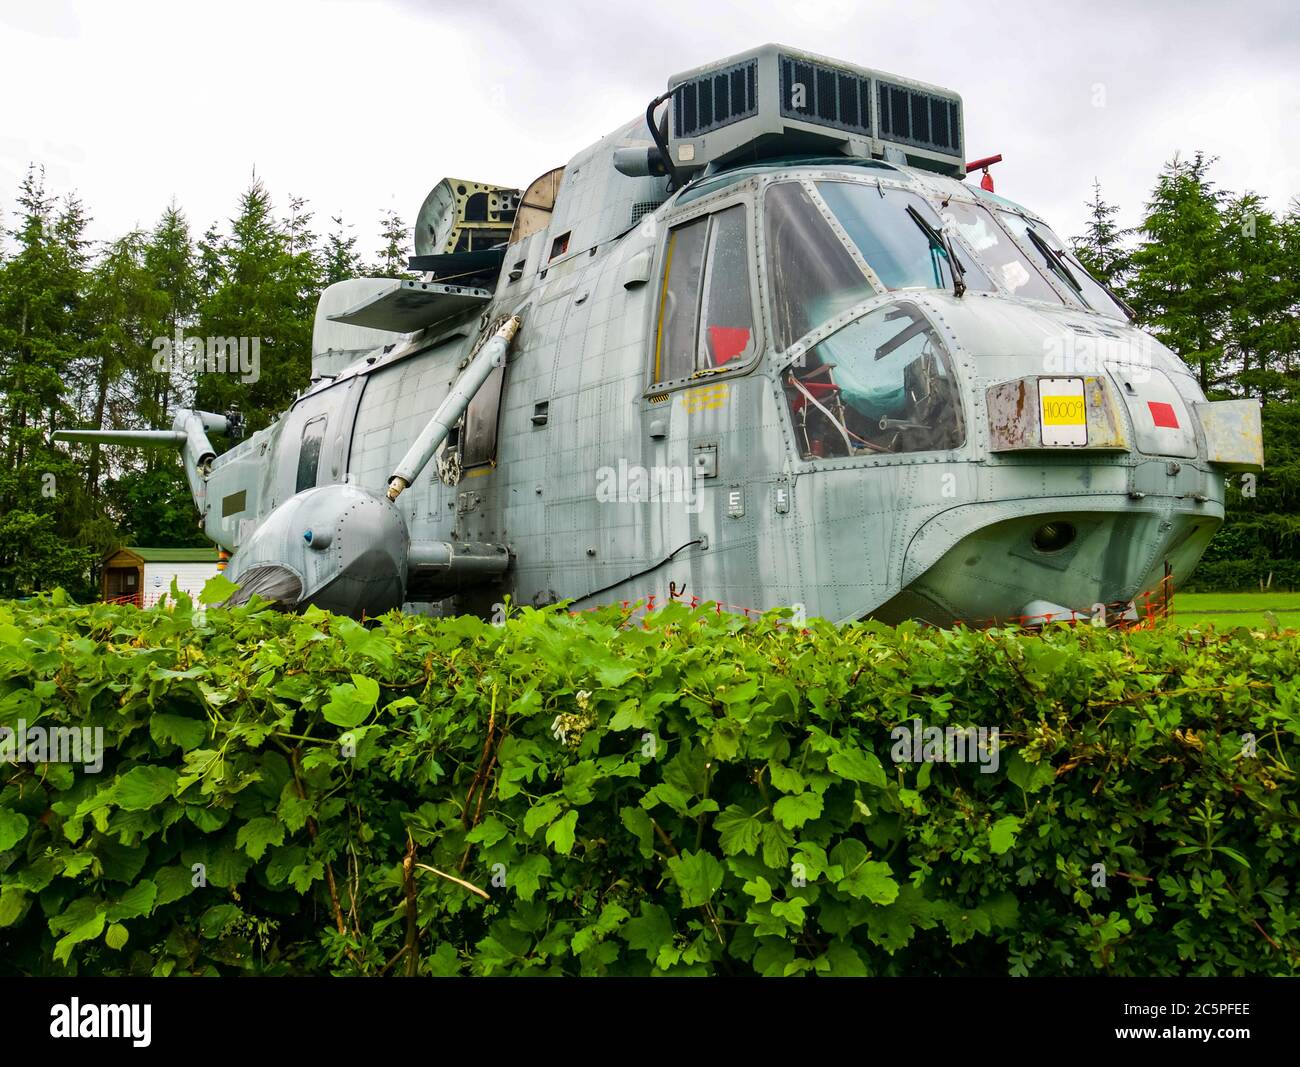 Désarroi de la conversion d'hélicoptère de Sea King pour des vacances insolites, ferme principale, Thornhill, Stirlingshire, Écosse, Royaume-Uni Banque D'Images